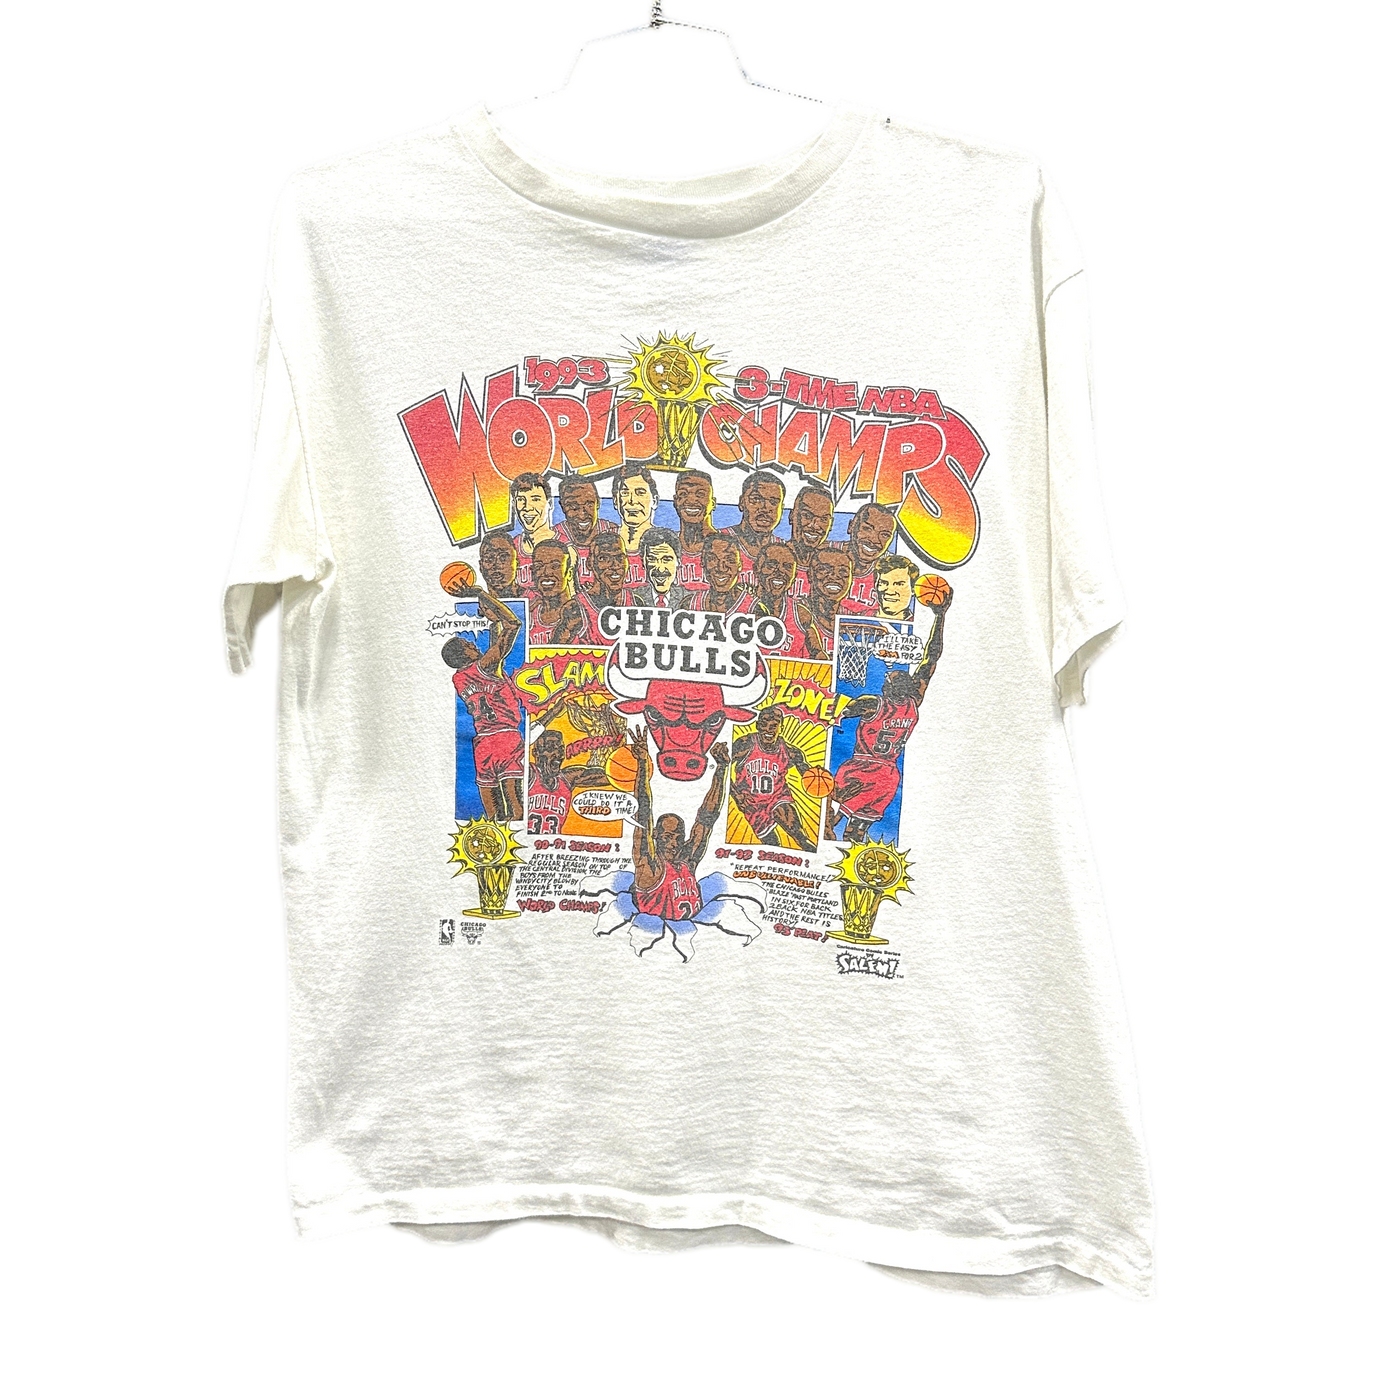 '93 World Champs Chicago Bulls White Sports T-shirt sz L